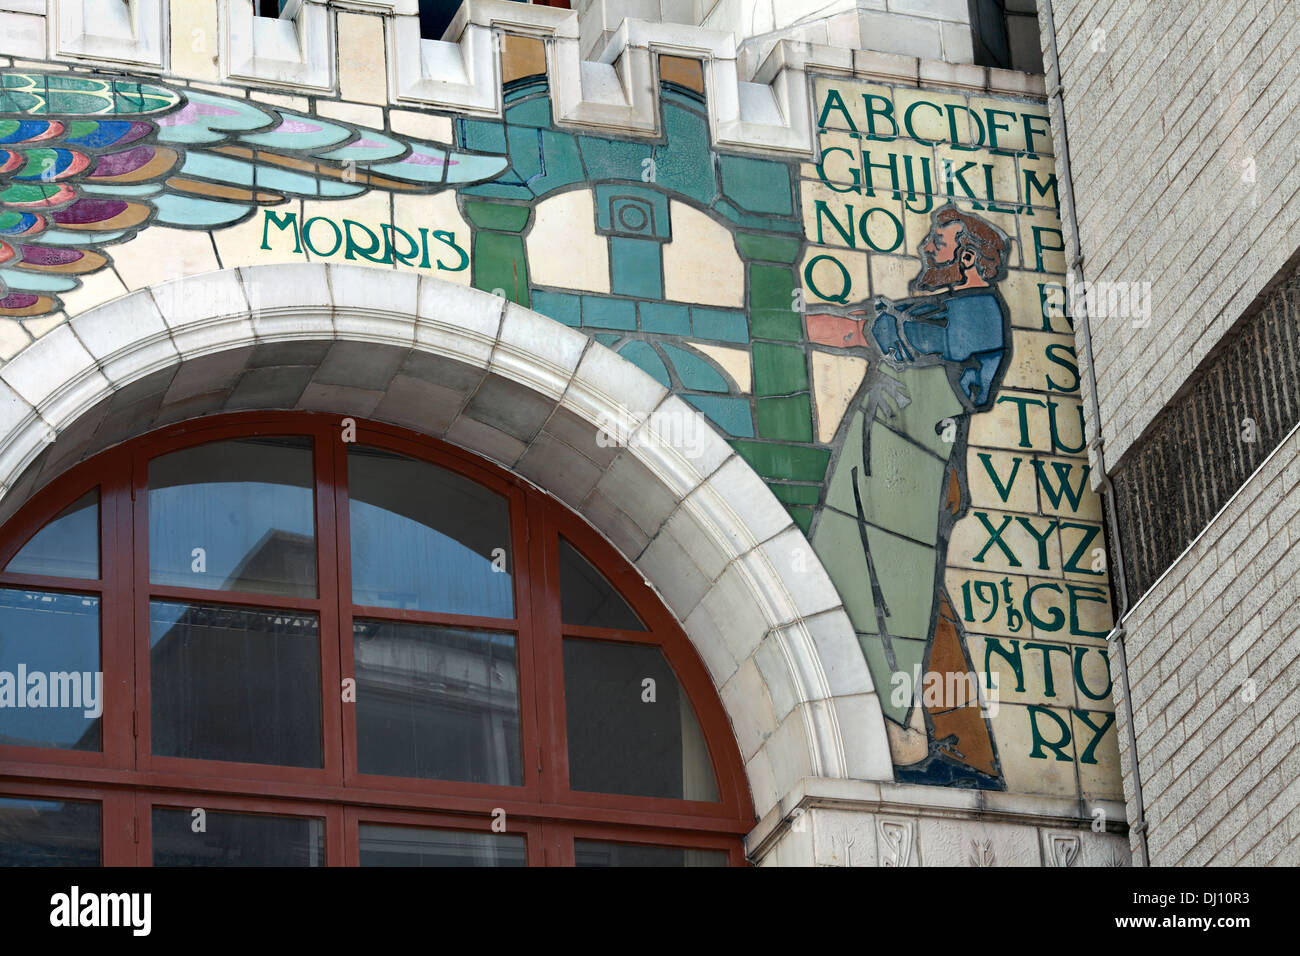 Une peinture murale représentant William Morris lors d'une presse à imprimer, sur la façade de l'ancien Edward Everard's print works, Bristol. Banque D'Images